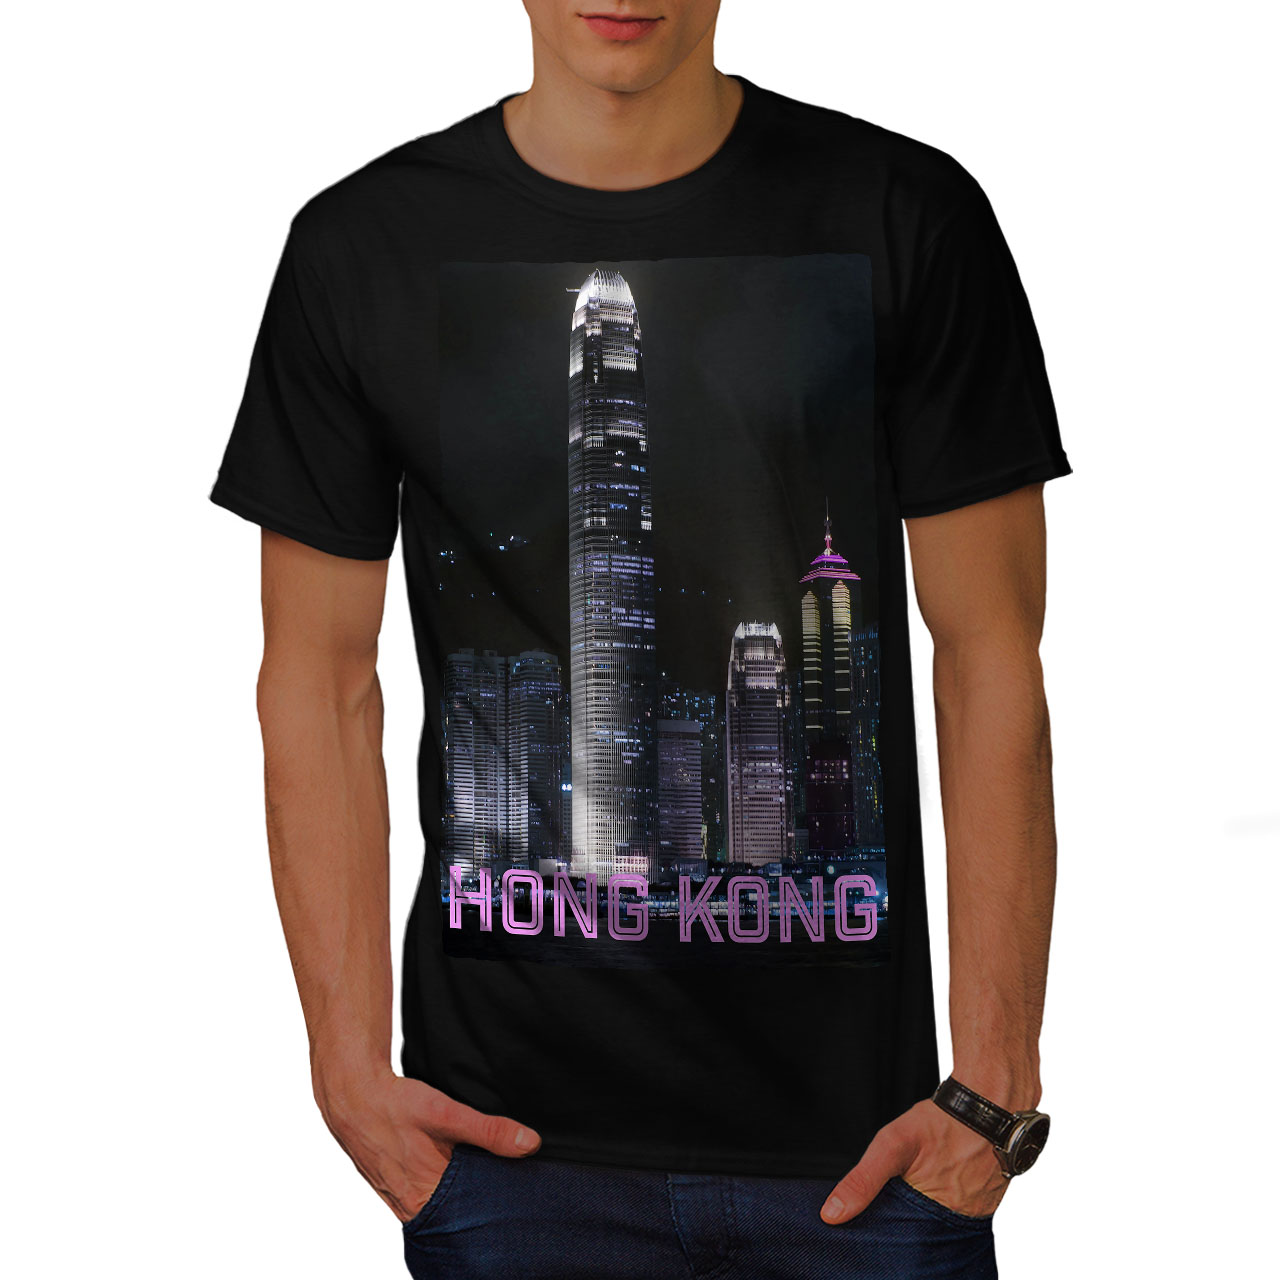 tee shirt printing hong kong